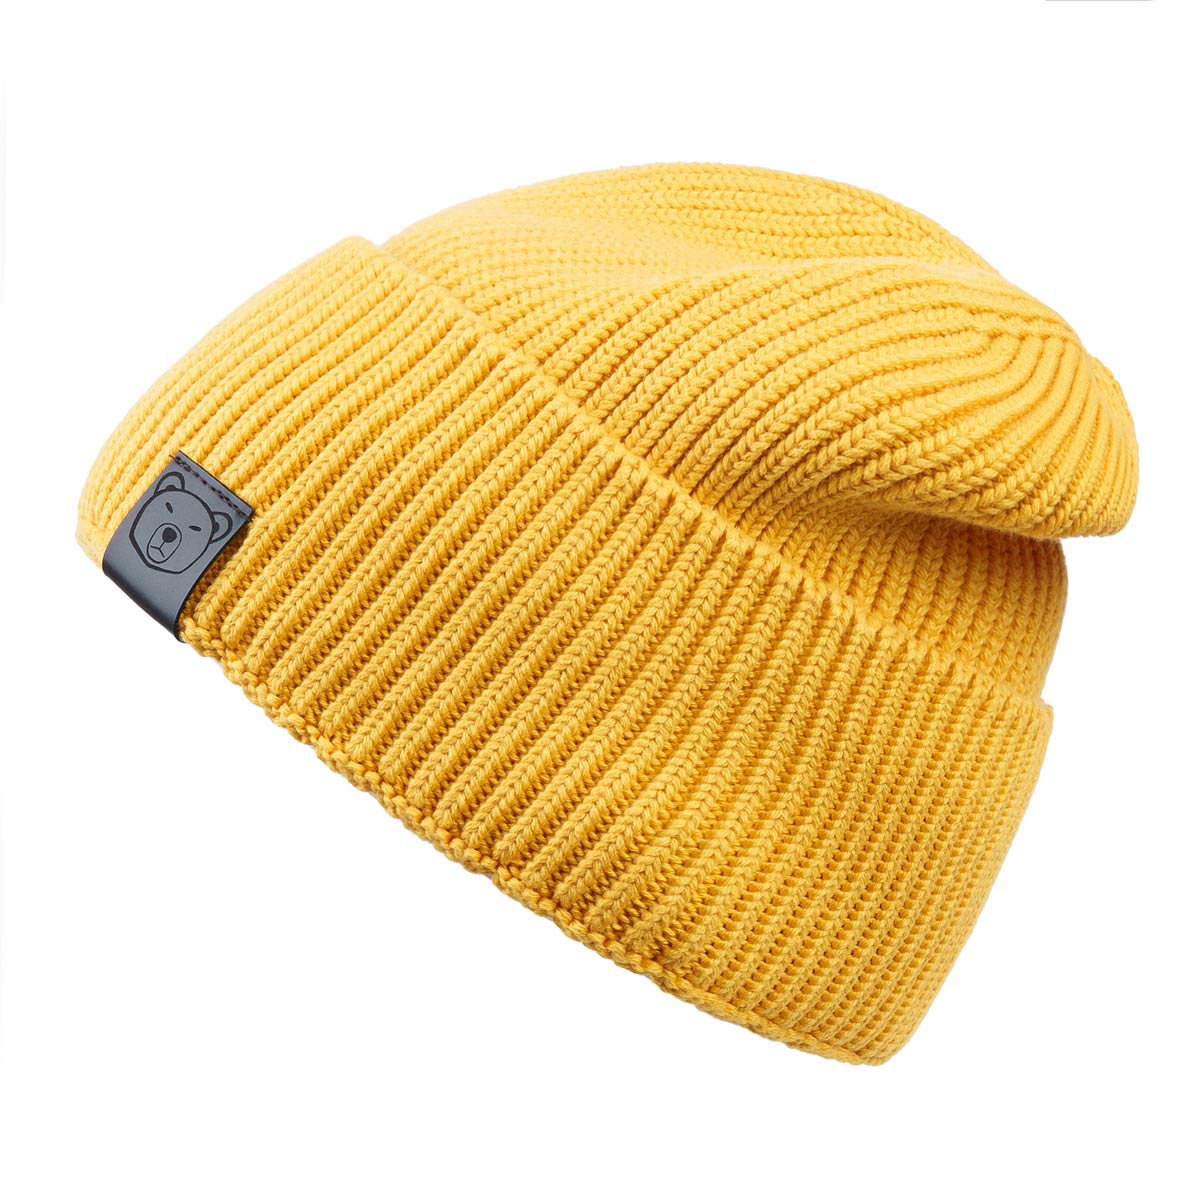 bonnet-coton-chaud-avec-revers-jaune-orange--CP-01686